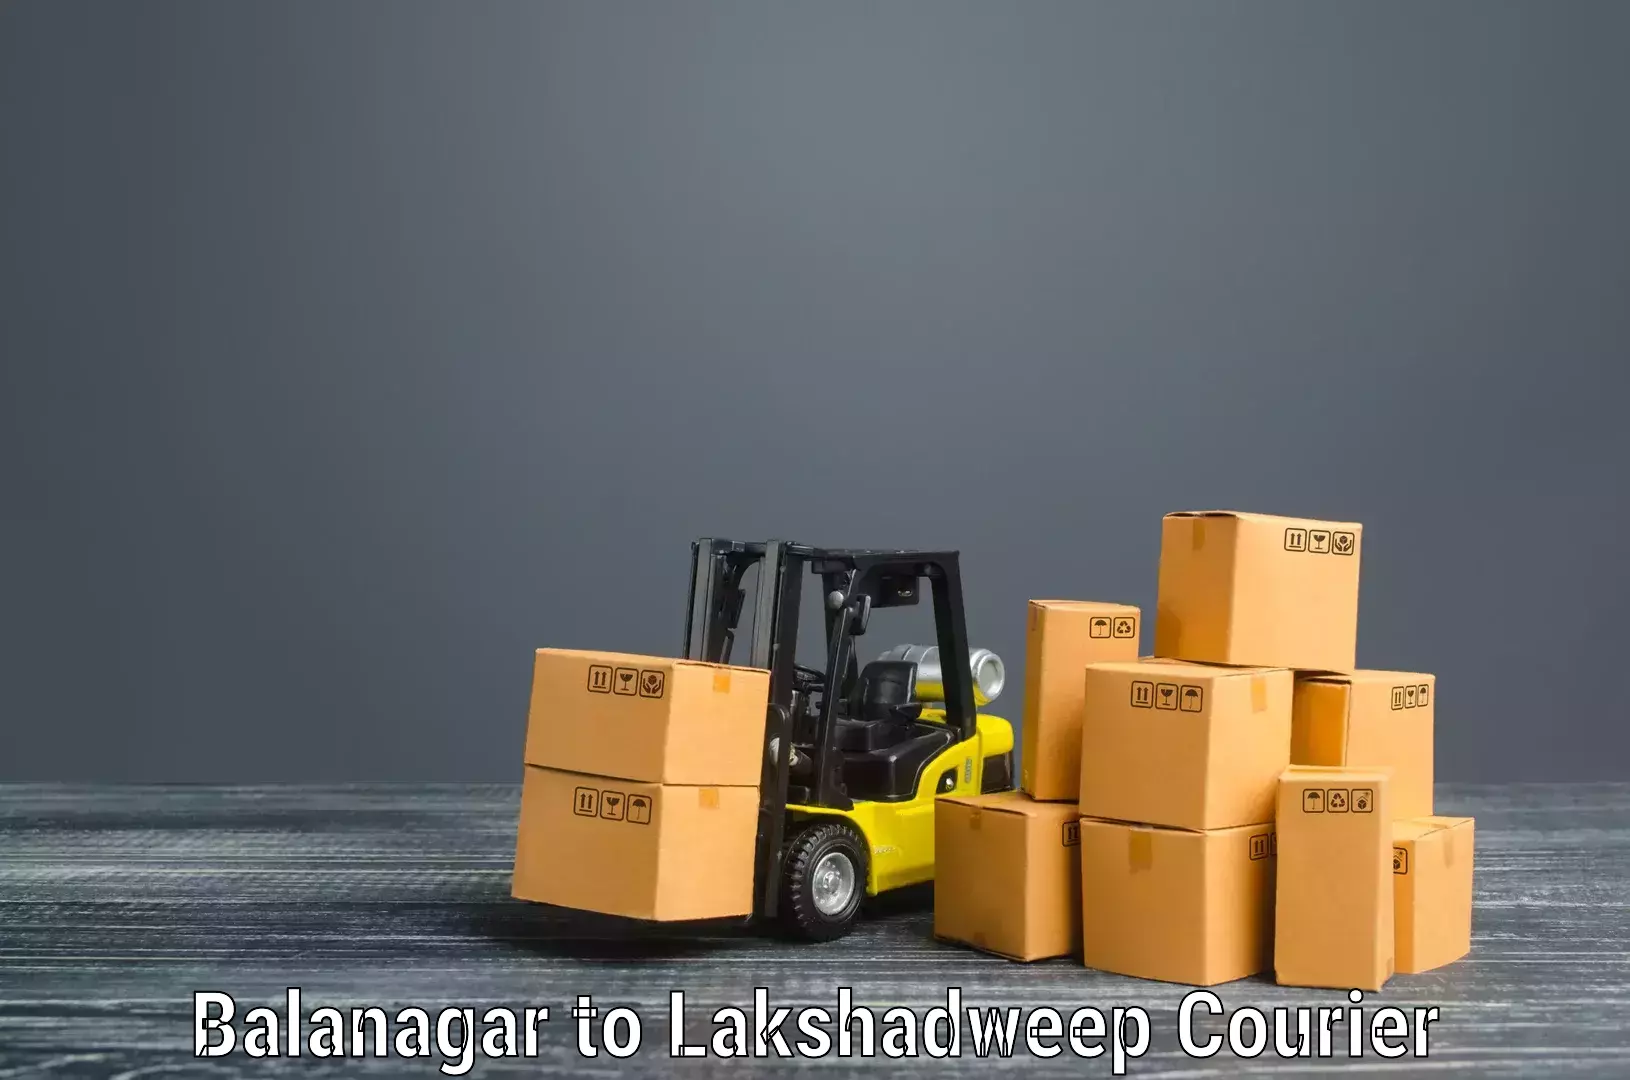 Home moving experts Balanagar to Lakshadweep